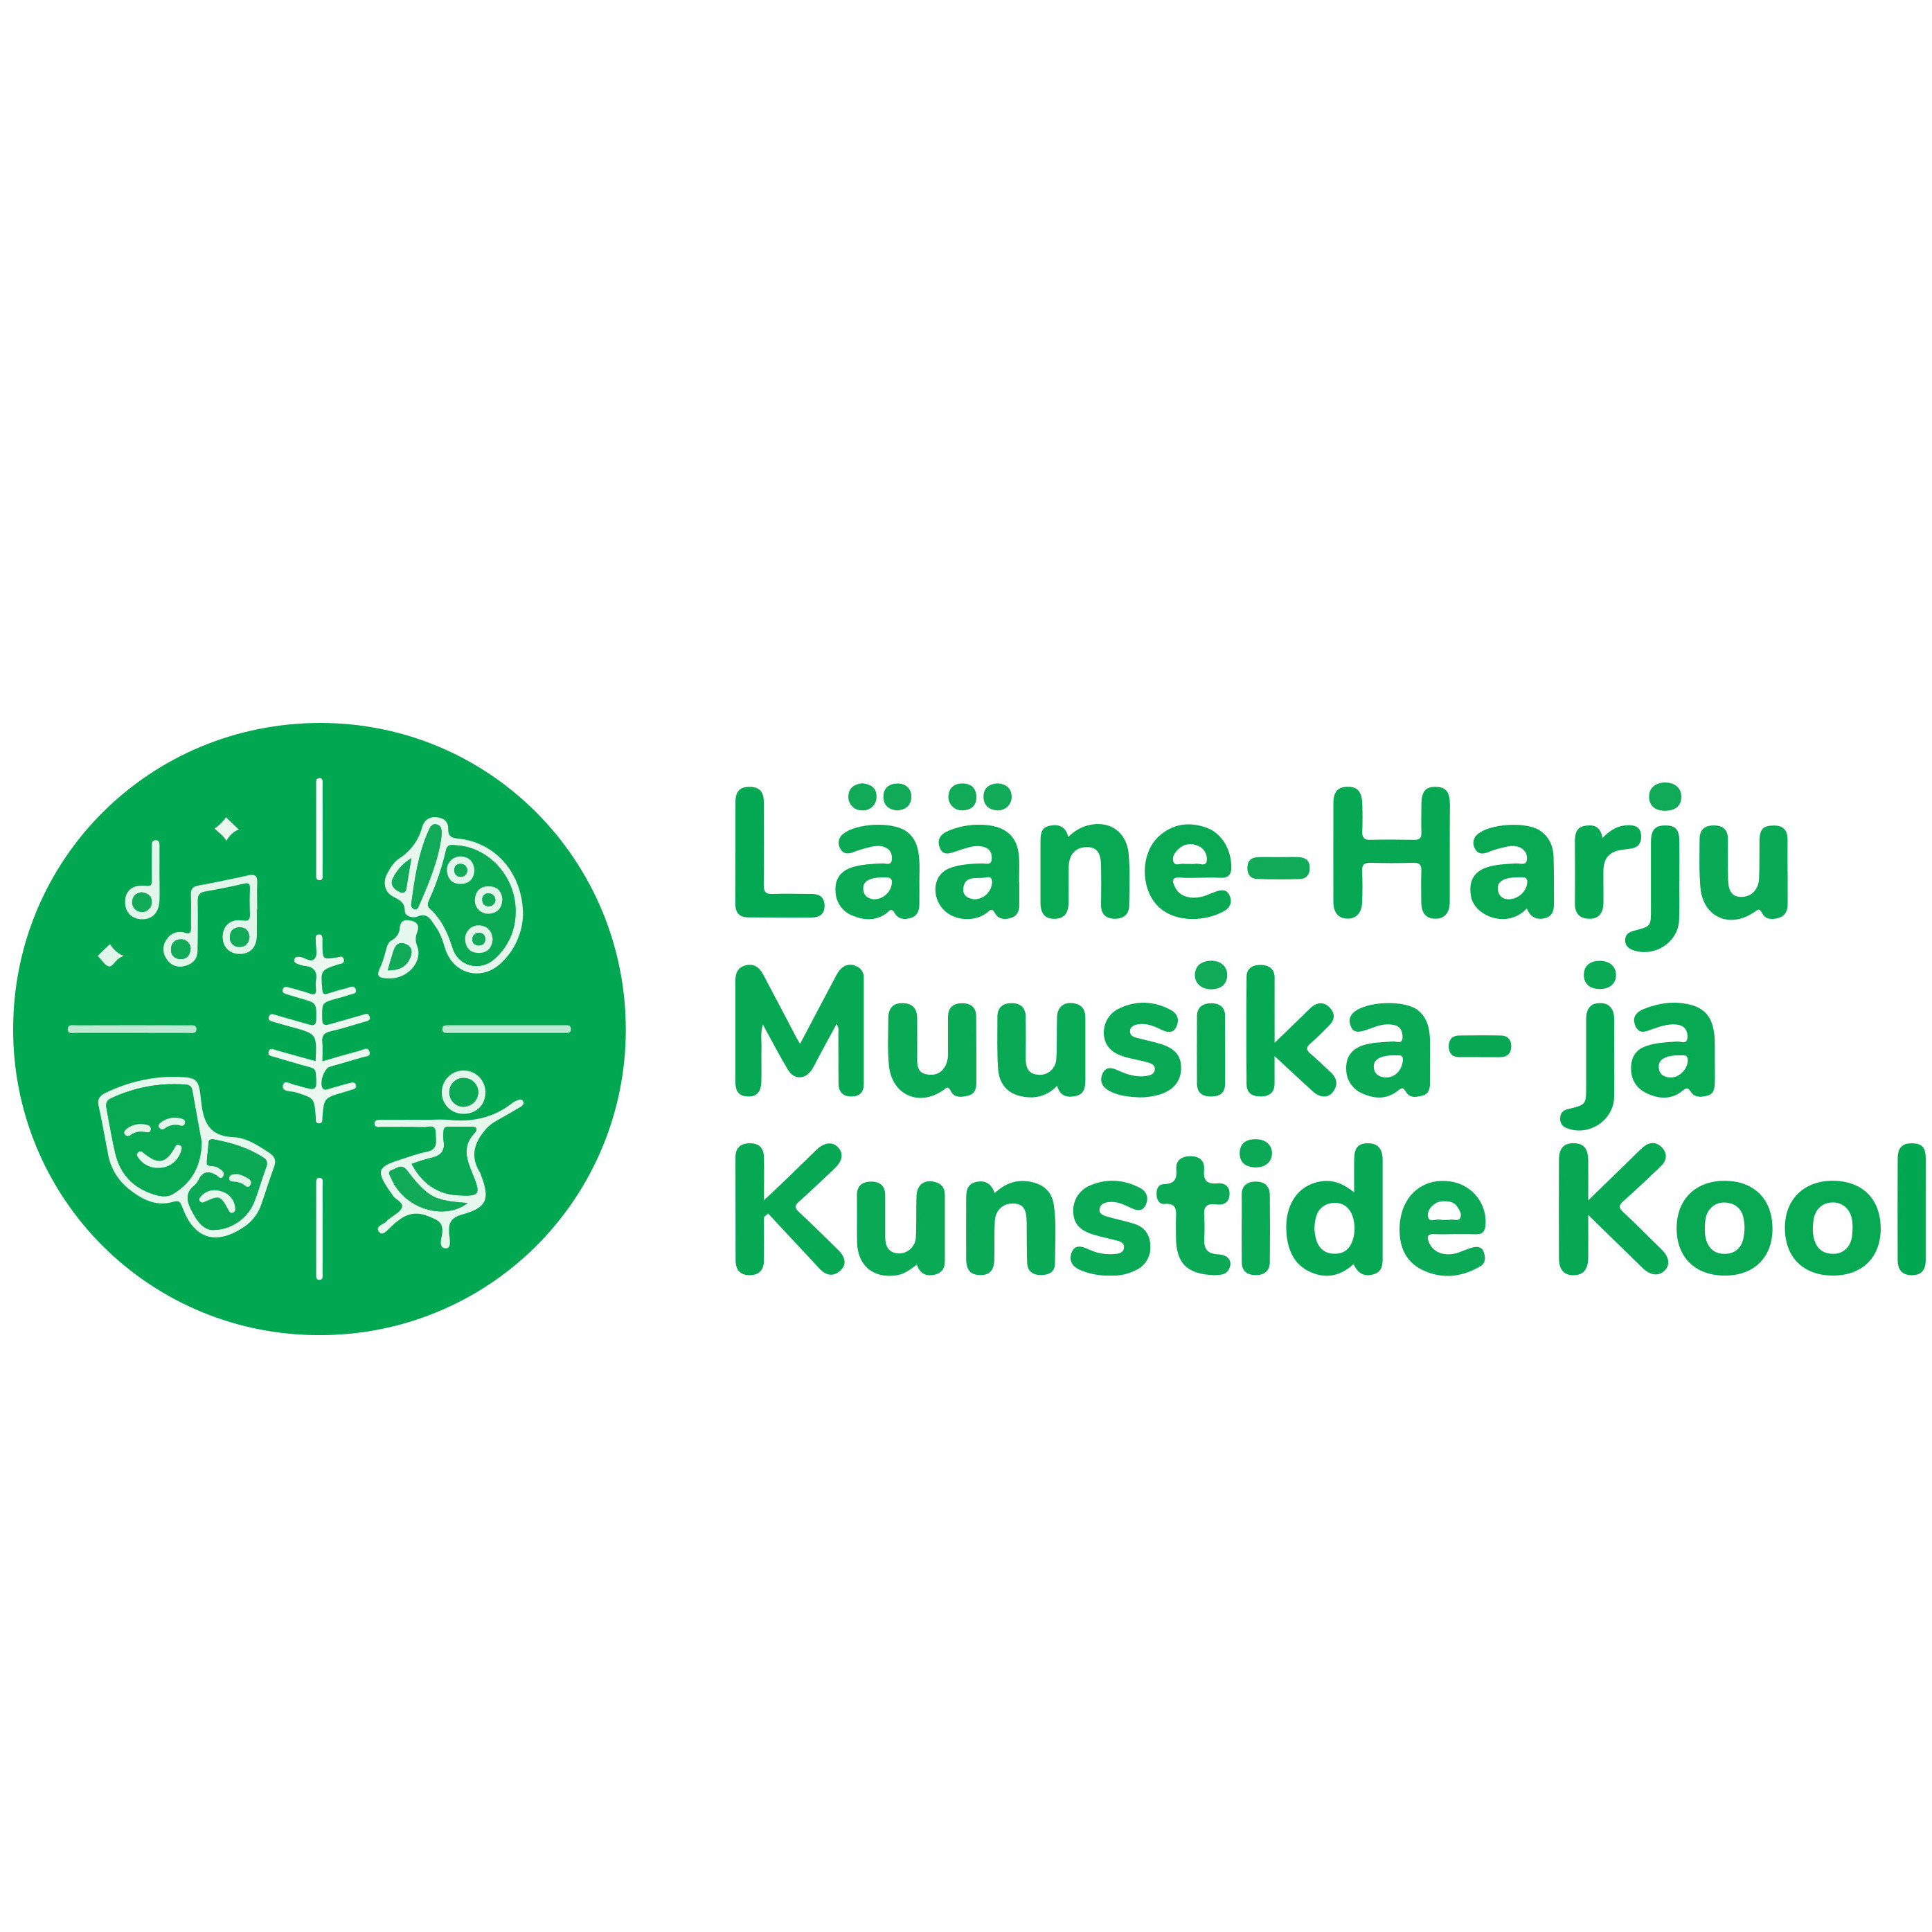 LÄÄNE-HARJU MUUSIKA- JA KUNSTIDE KOOL logo